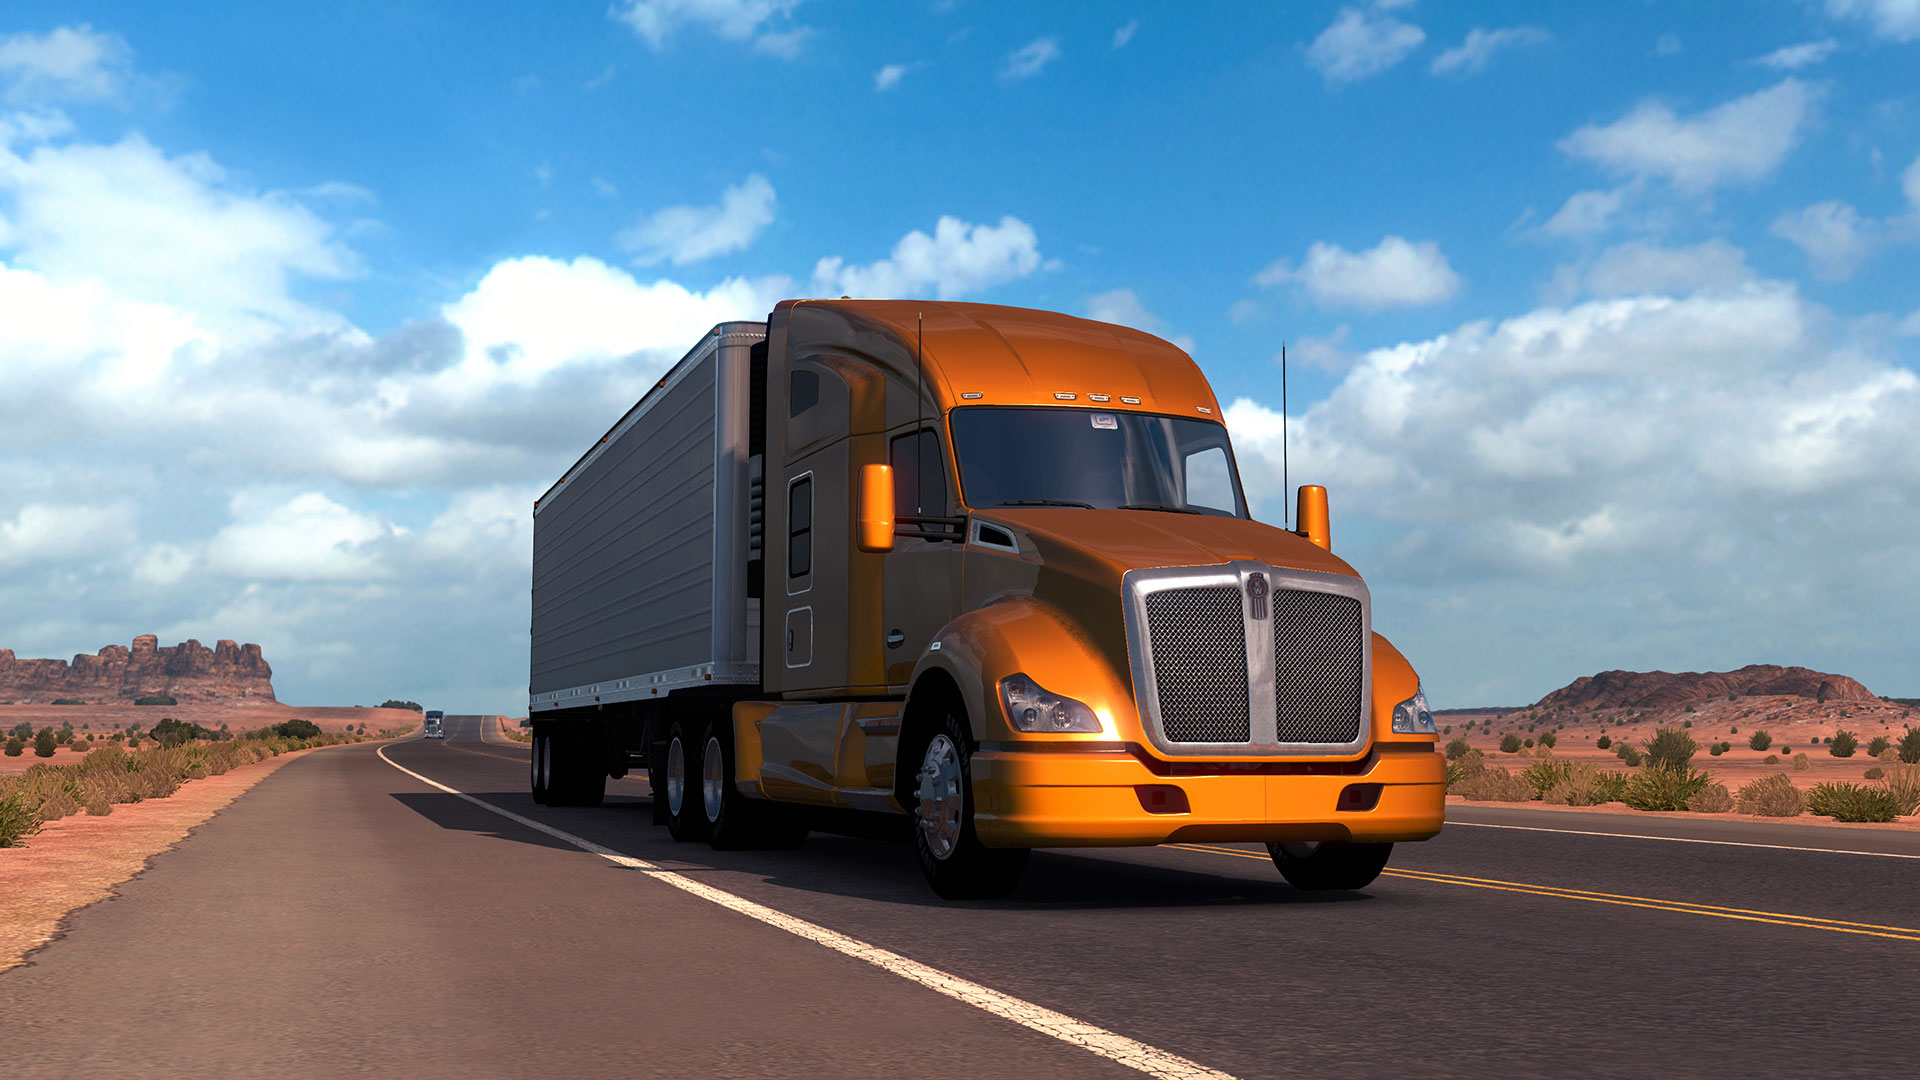 Mua American Truck Simulator cho PC | Zuu.vn - Website Game Bản Quyền